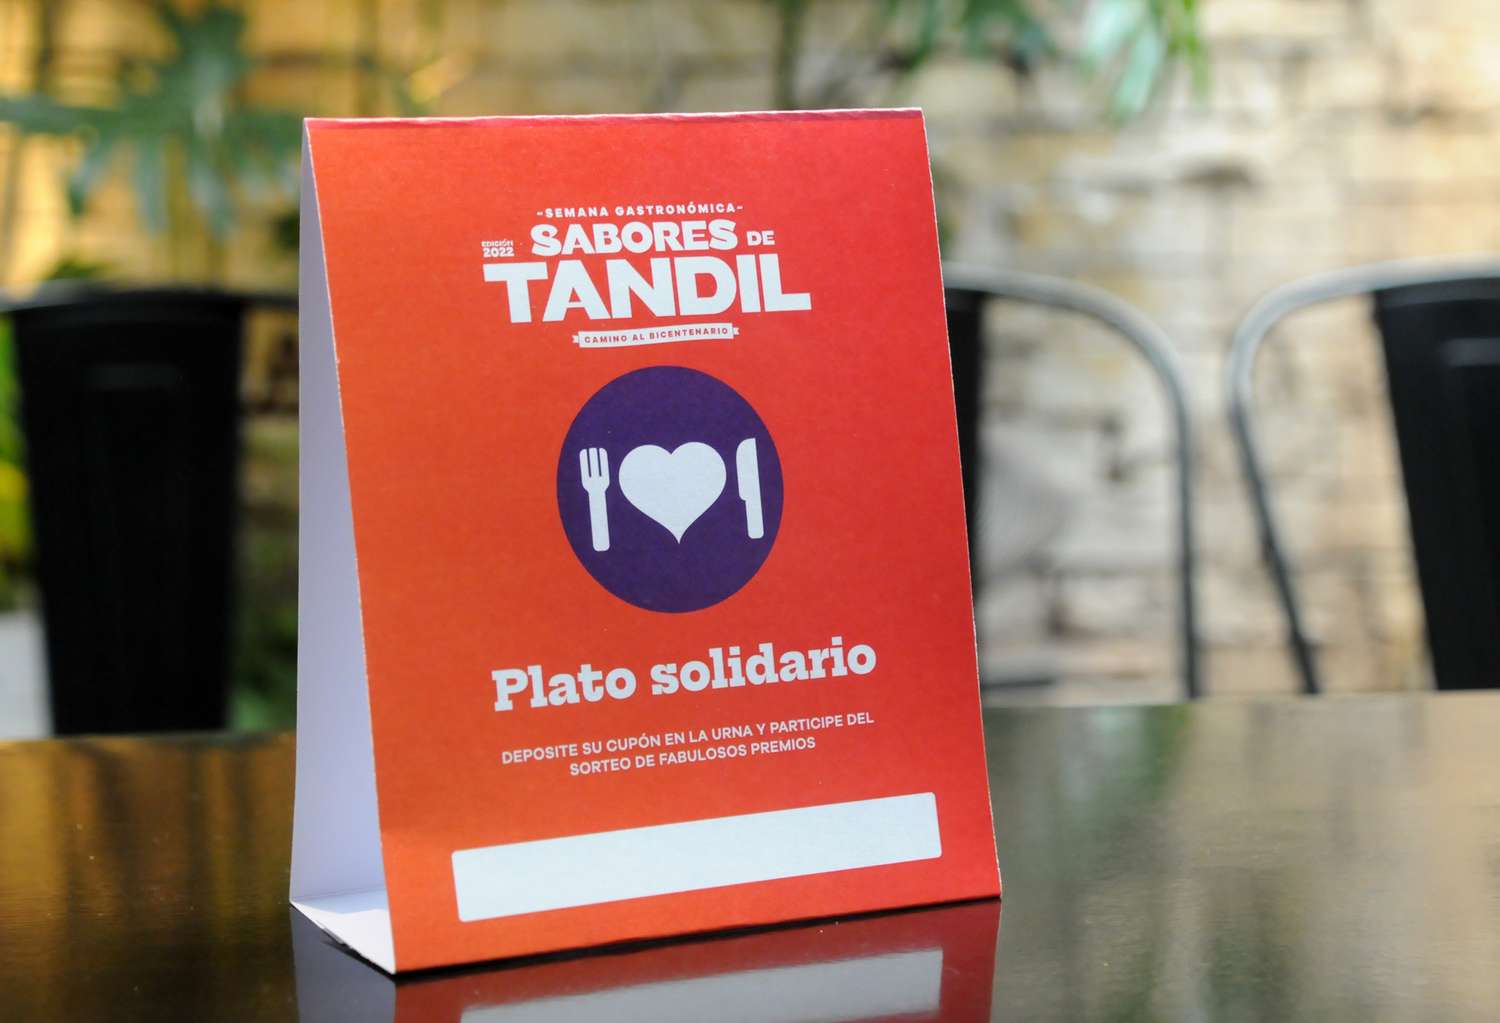 Semana Gastronómica “Sabores de Tandil” 2022: Circuito Regional y Plato Solidario